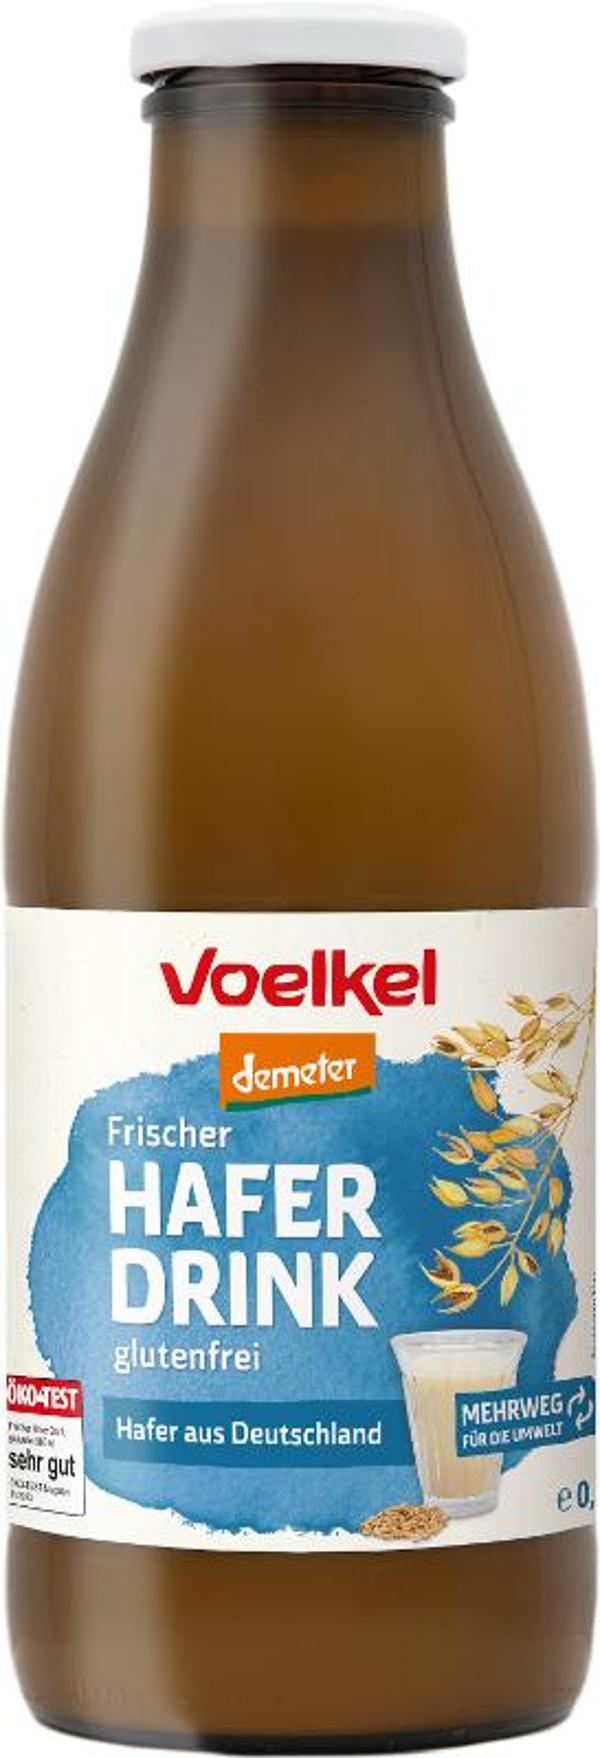 Produktfoto zu VPE Frischer Hafer Drink 6x1l Voelkel